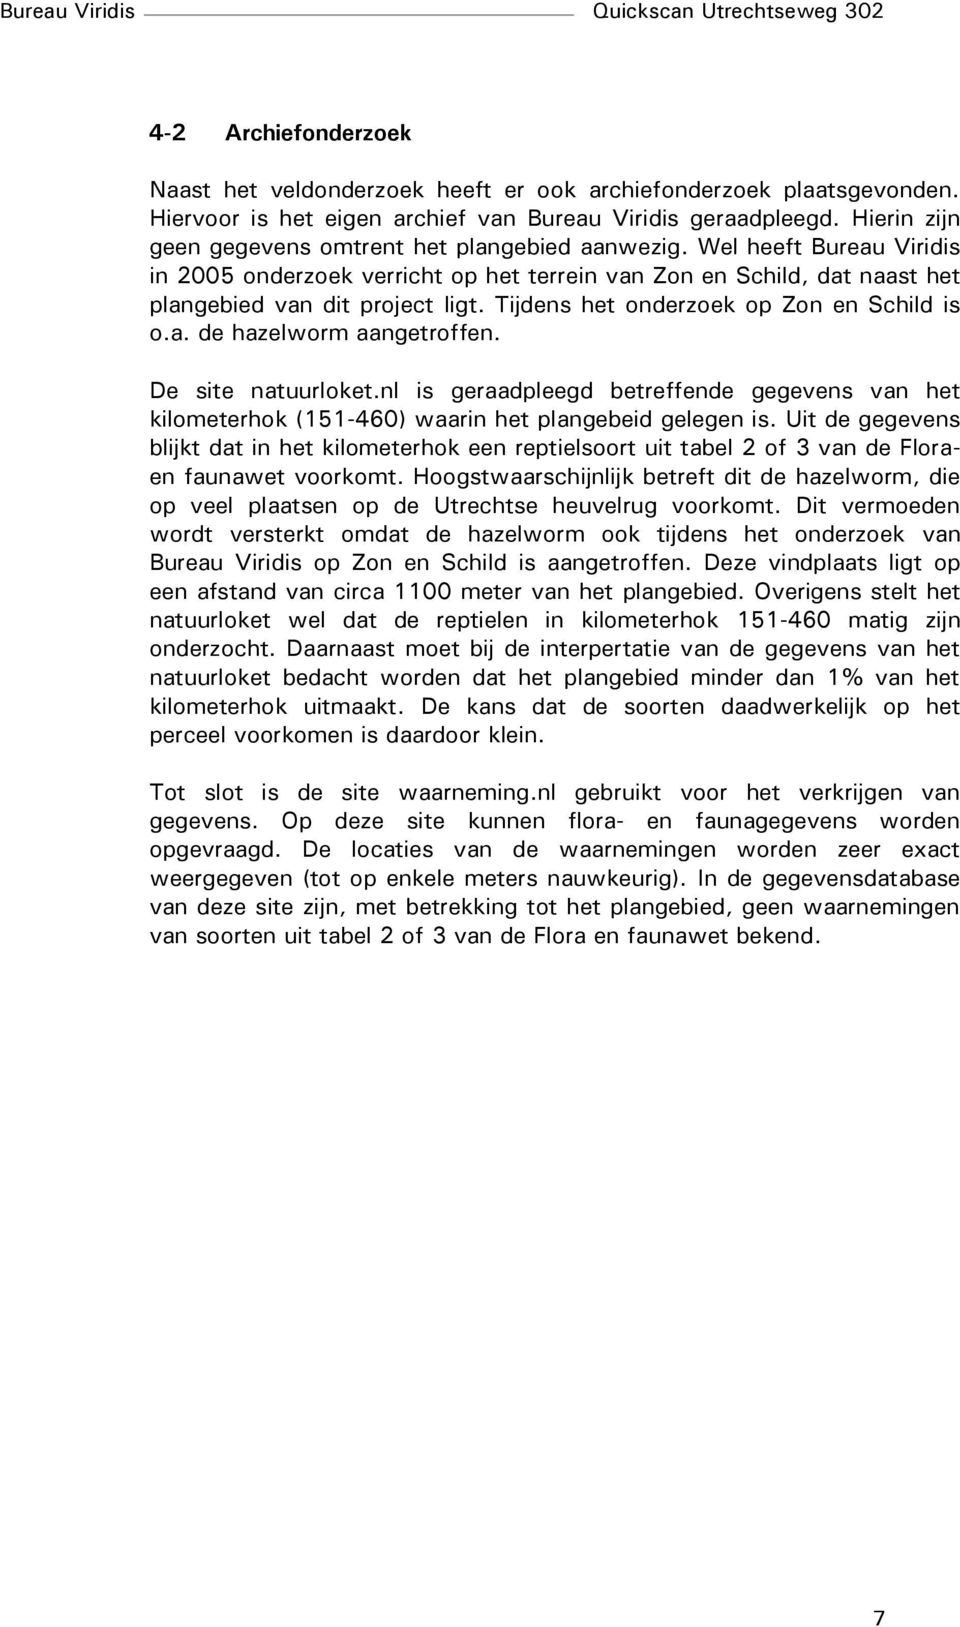 Tijdens het onderzoek op Zon en Schild is o.a. de hazelworm aangetroffen. De site natuurloket.nl is geraadpleegd betreffende gegevens van het kilometerhok (151-460) waarin het plangebeid gelegen is.